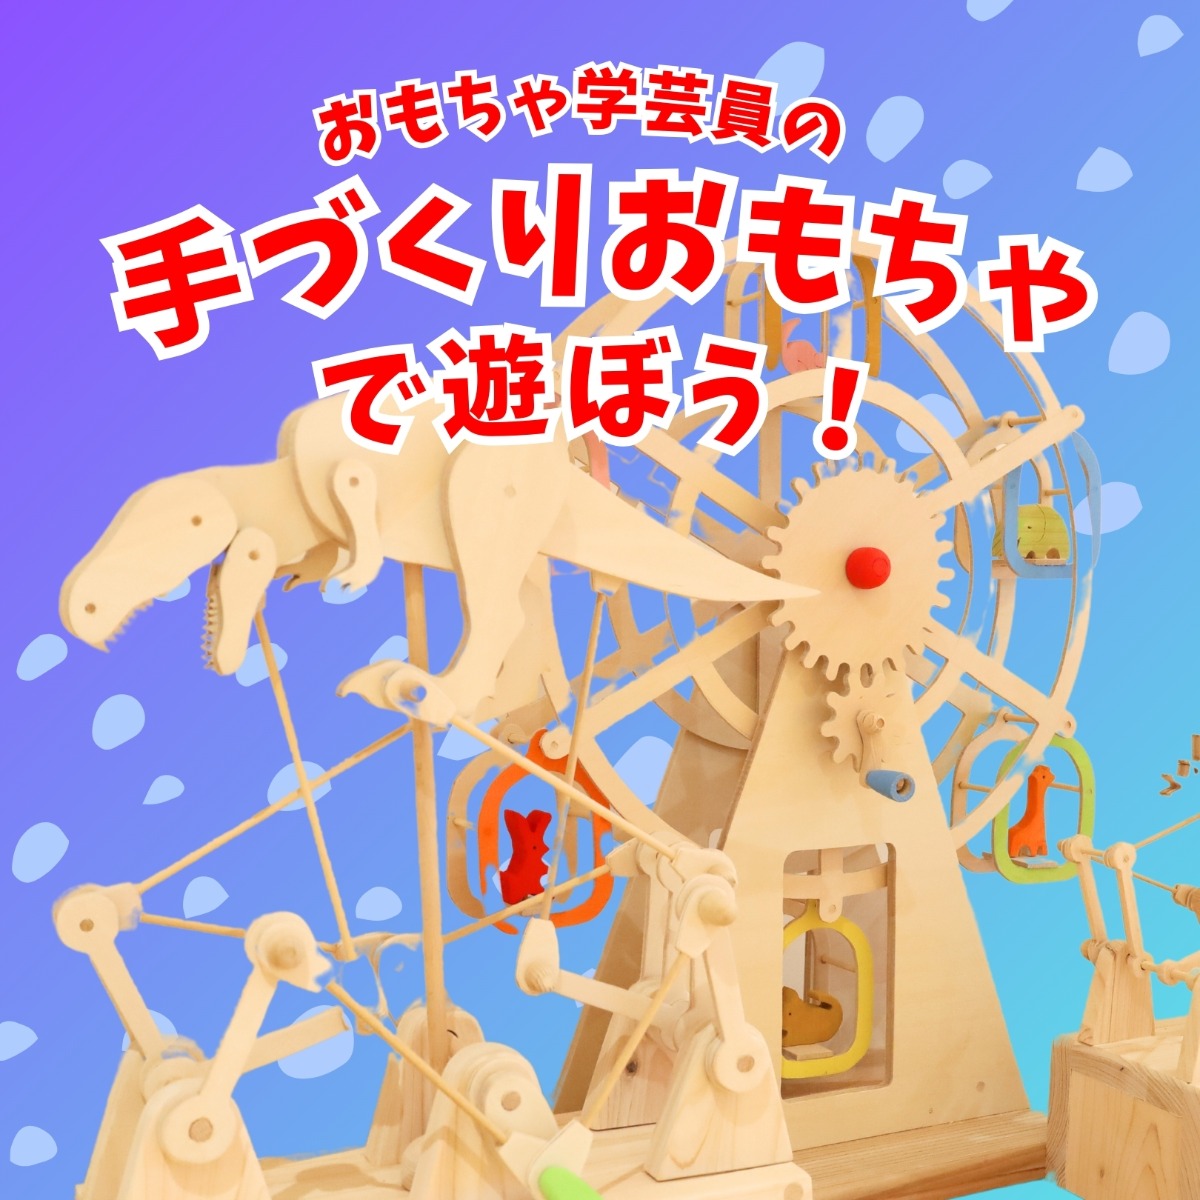 【徳島イベント情報】徳島木のおもちゃ美術館【3月】